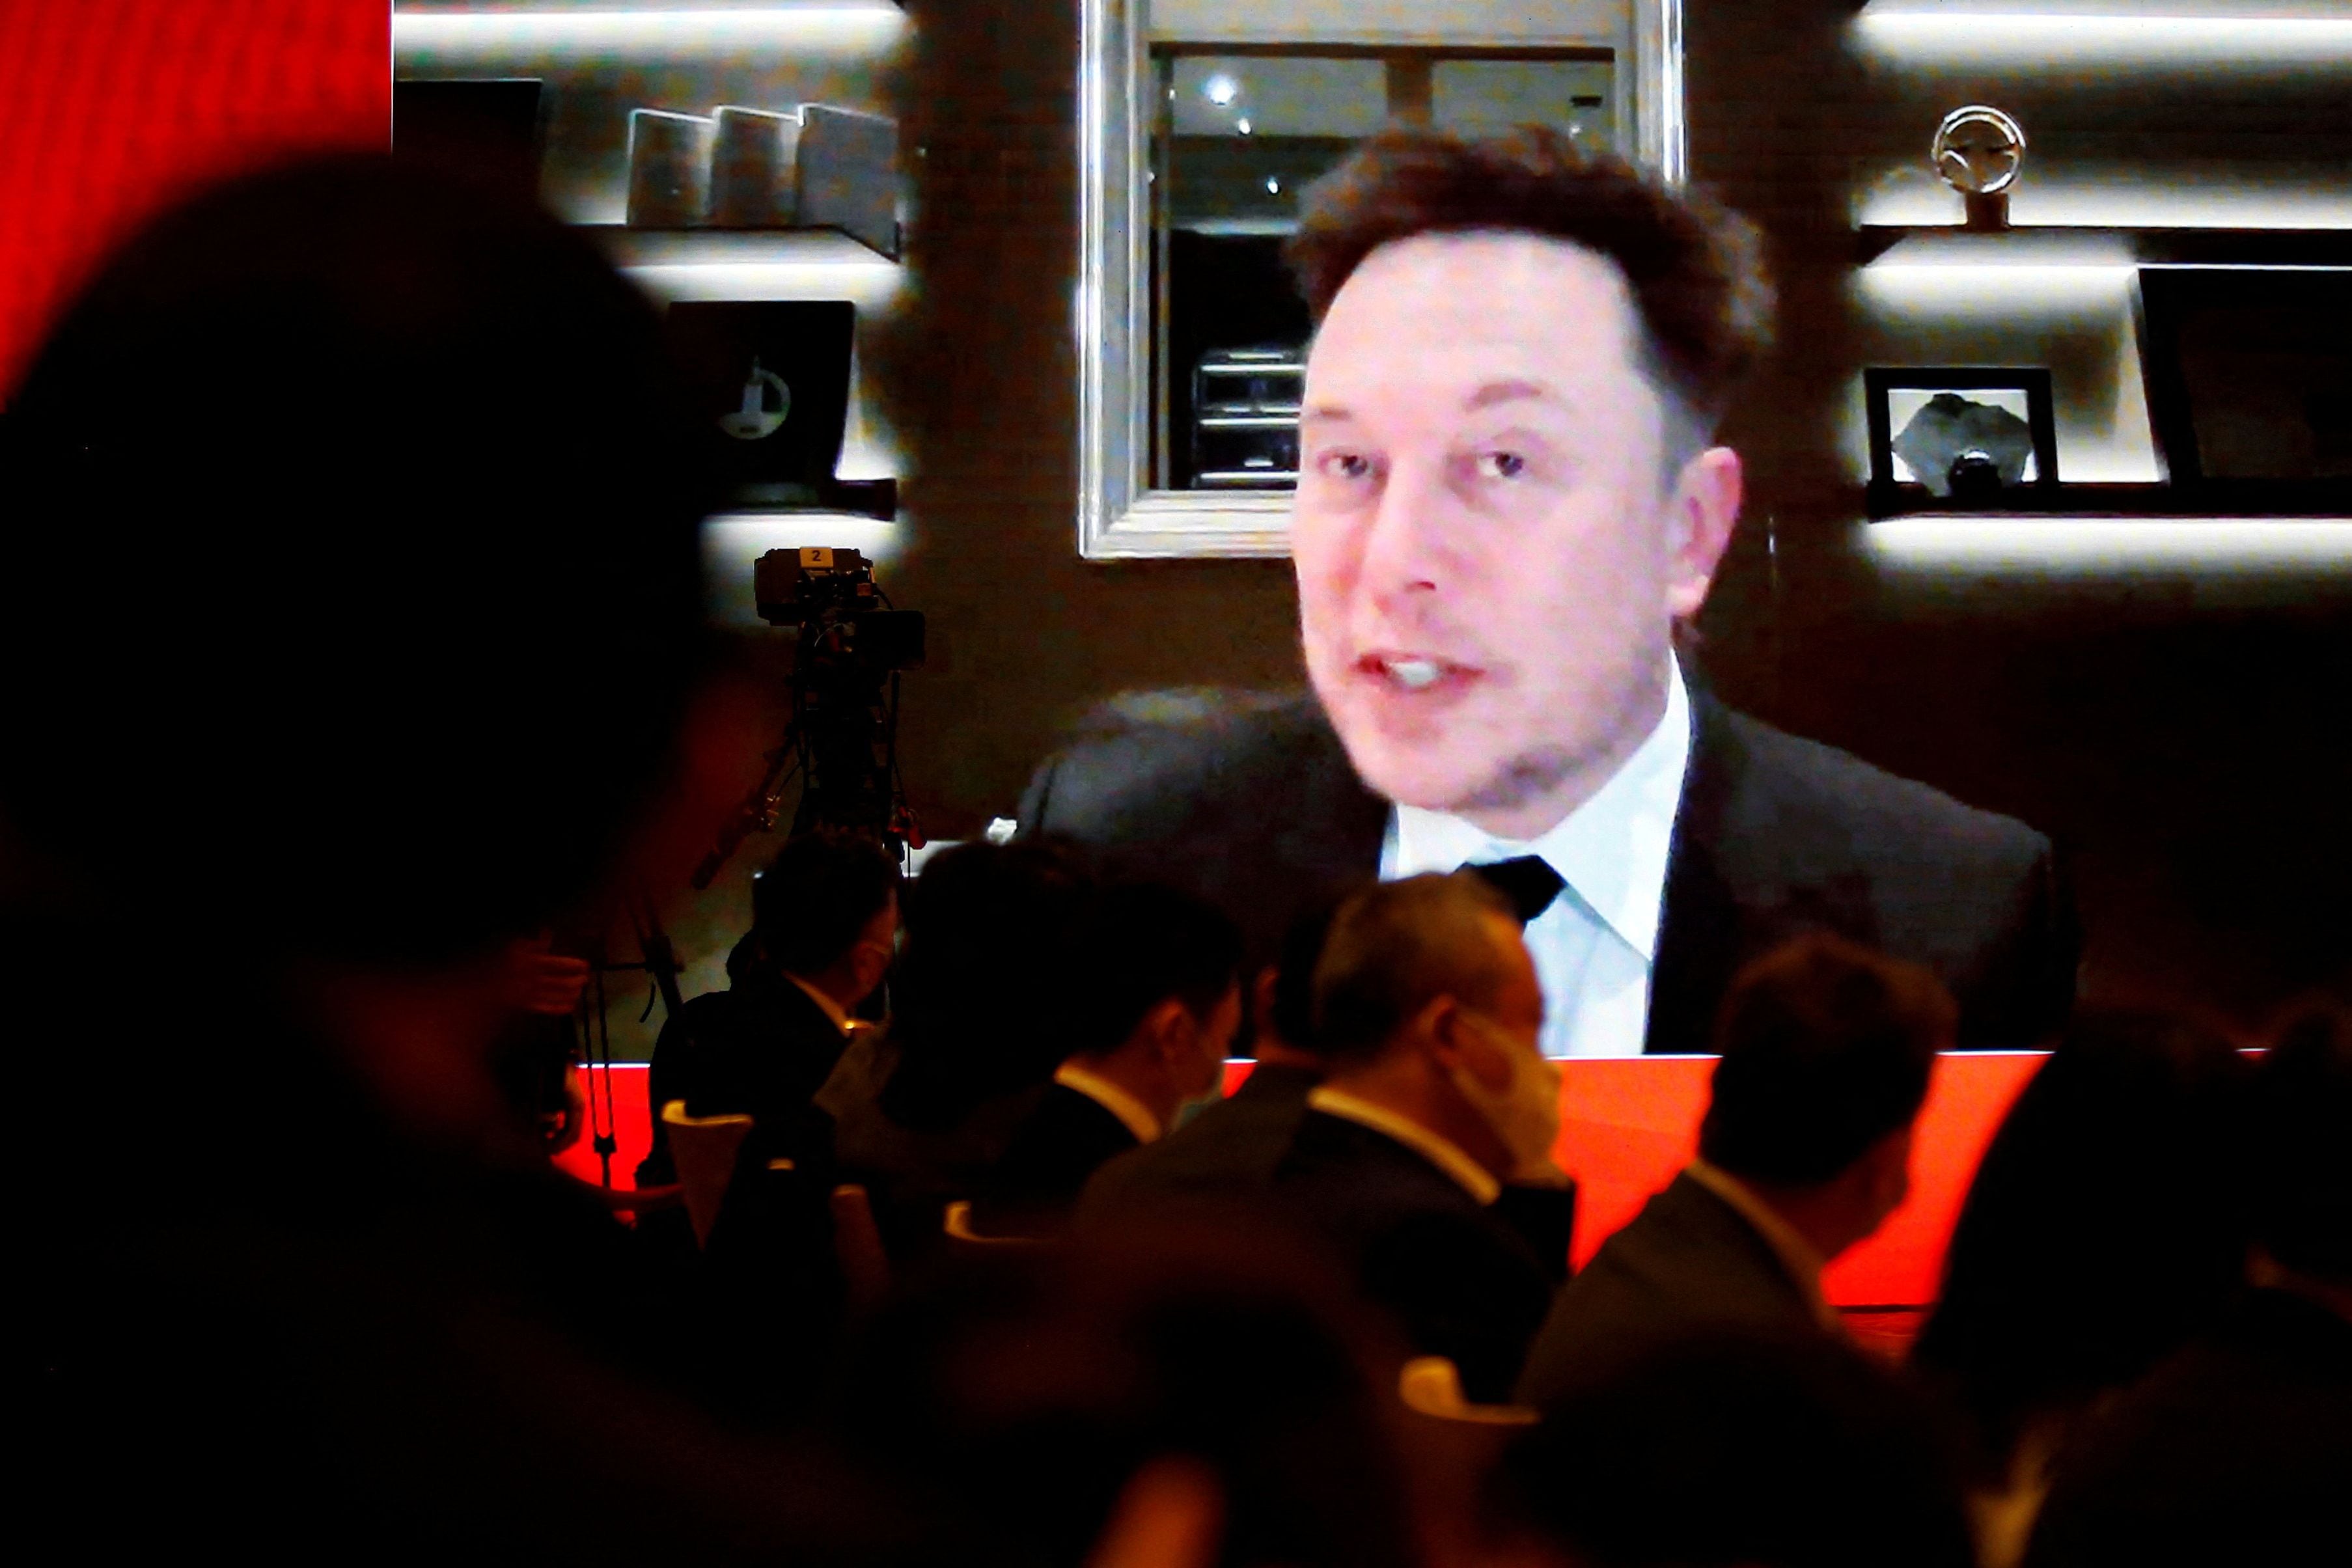 FOTO DE ARCHIVO: El director ejecutivo de Tesla Inc, Elon Musk, asiste a través de un enlace de video a una sesión en el Foro de Desarrollo de China celebrado en Beijing, China, el 20 de marzo de 2021. REUTERS/Roxanne Liu/File Photo